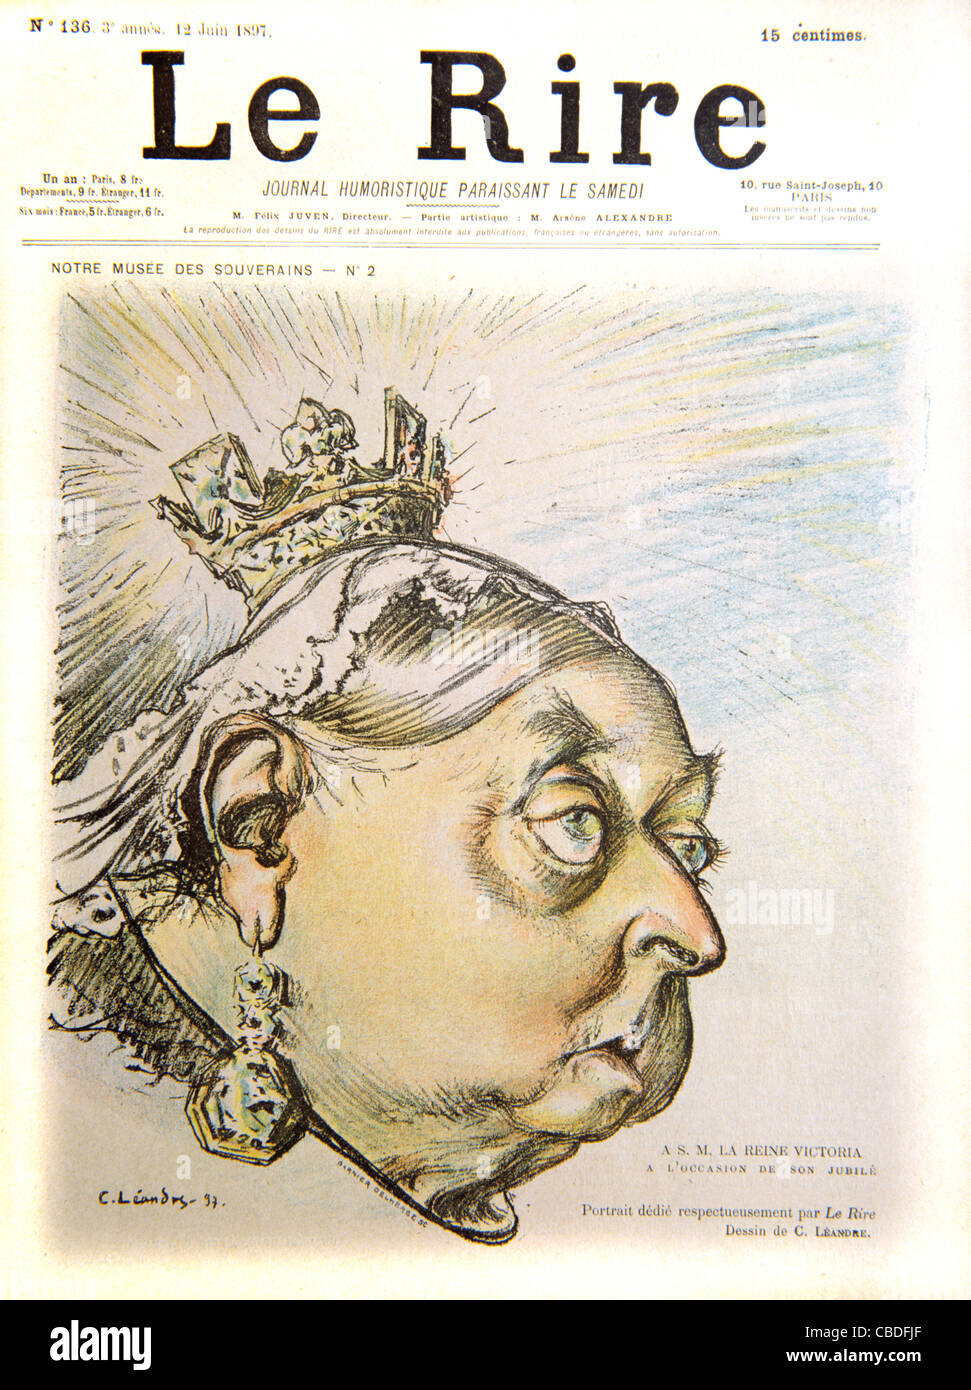 Satirisches Porträt von Königin Victoria in ihrem 60. Jubiläumsjahr. Cover des französischen Satiremagazins 'Le Rire', Juni 1897. Vintage-Illustration Stockfoto